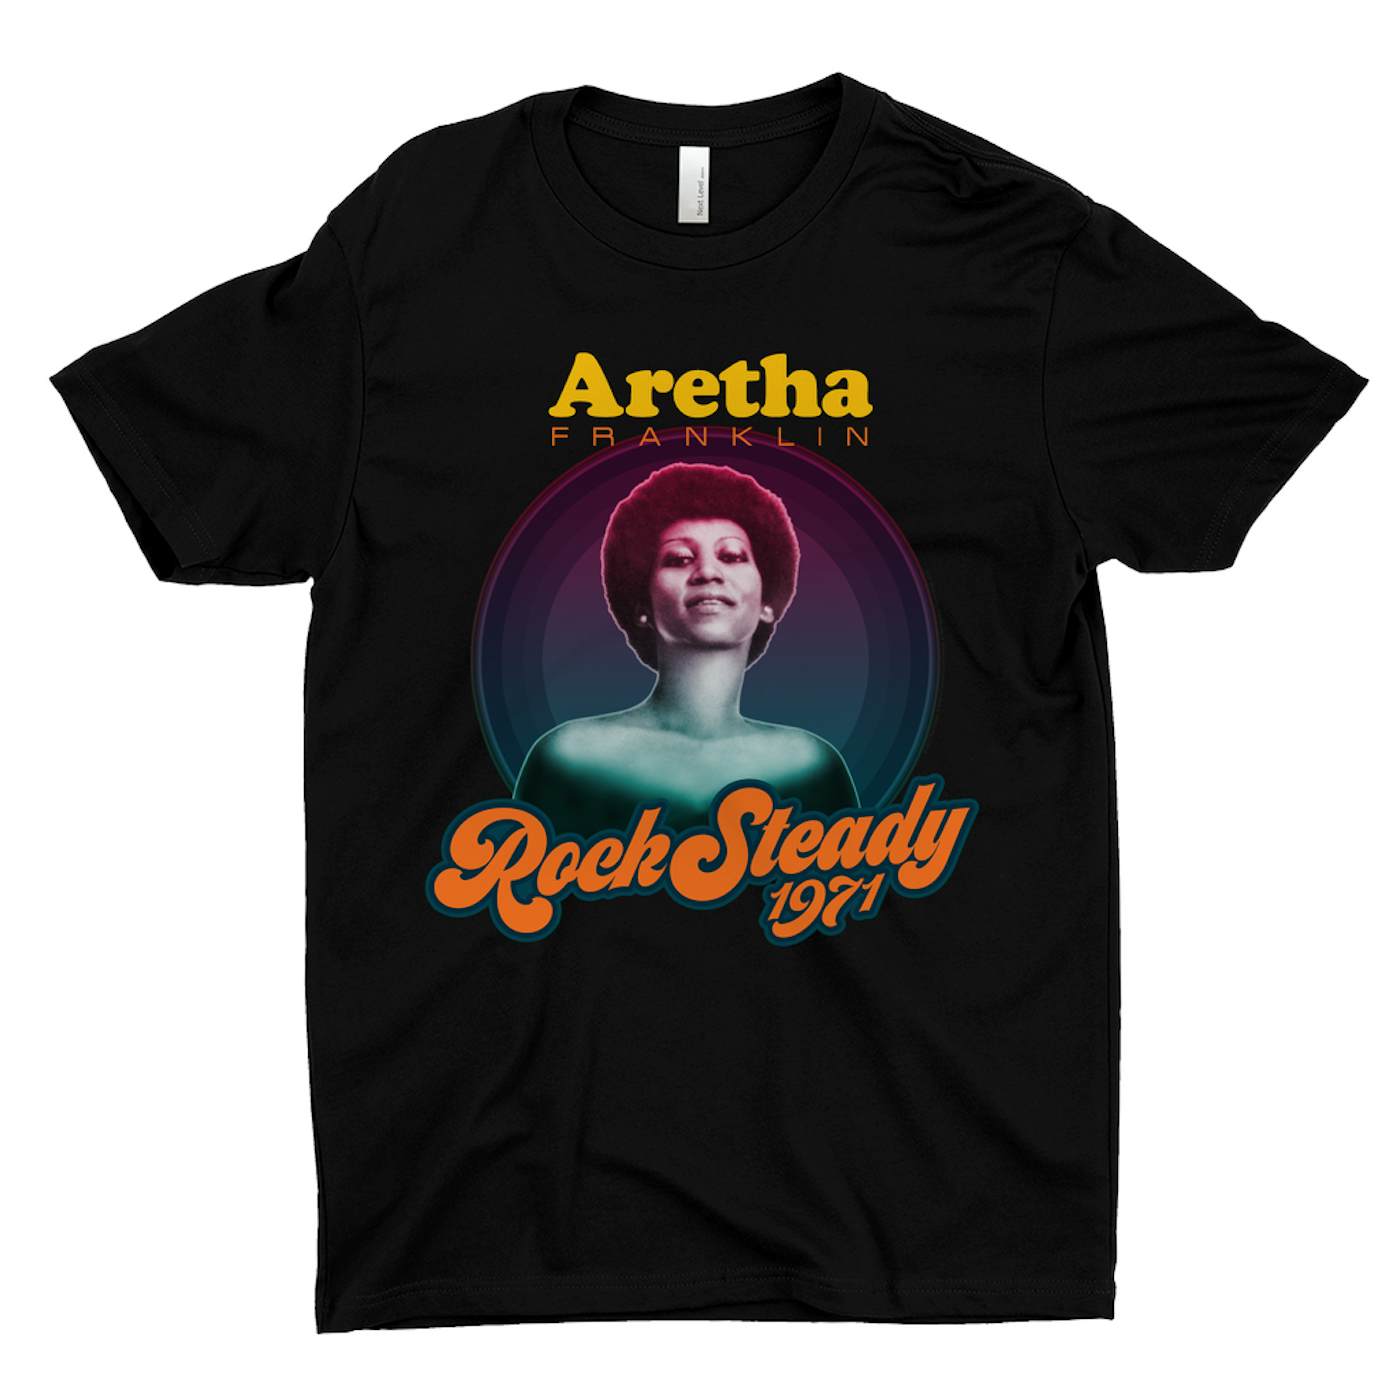 Aretha Franklin T-Shirt | Rock Steady 1971 Aretha Franklin Shirt